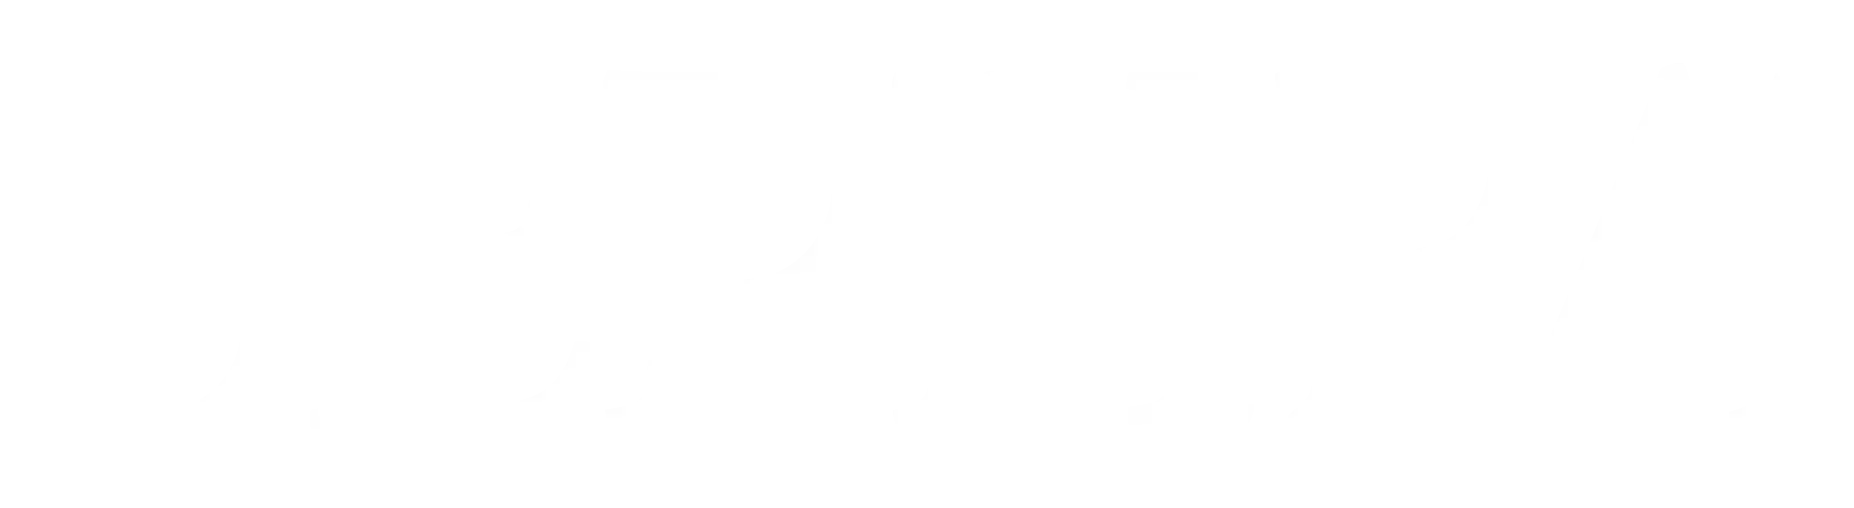 Sephra footer logo